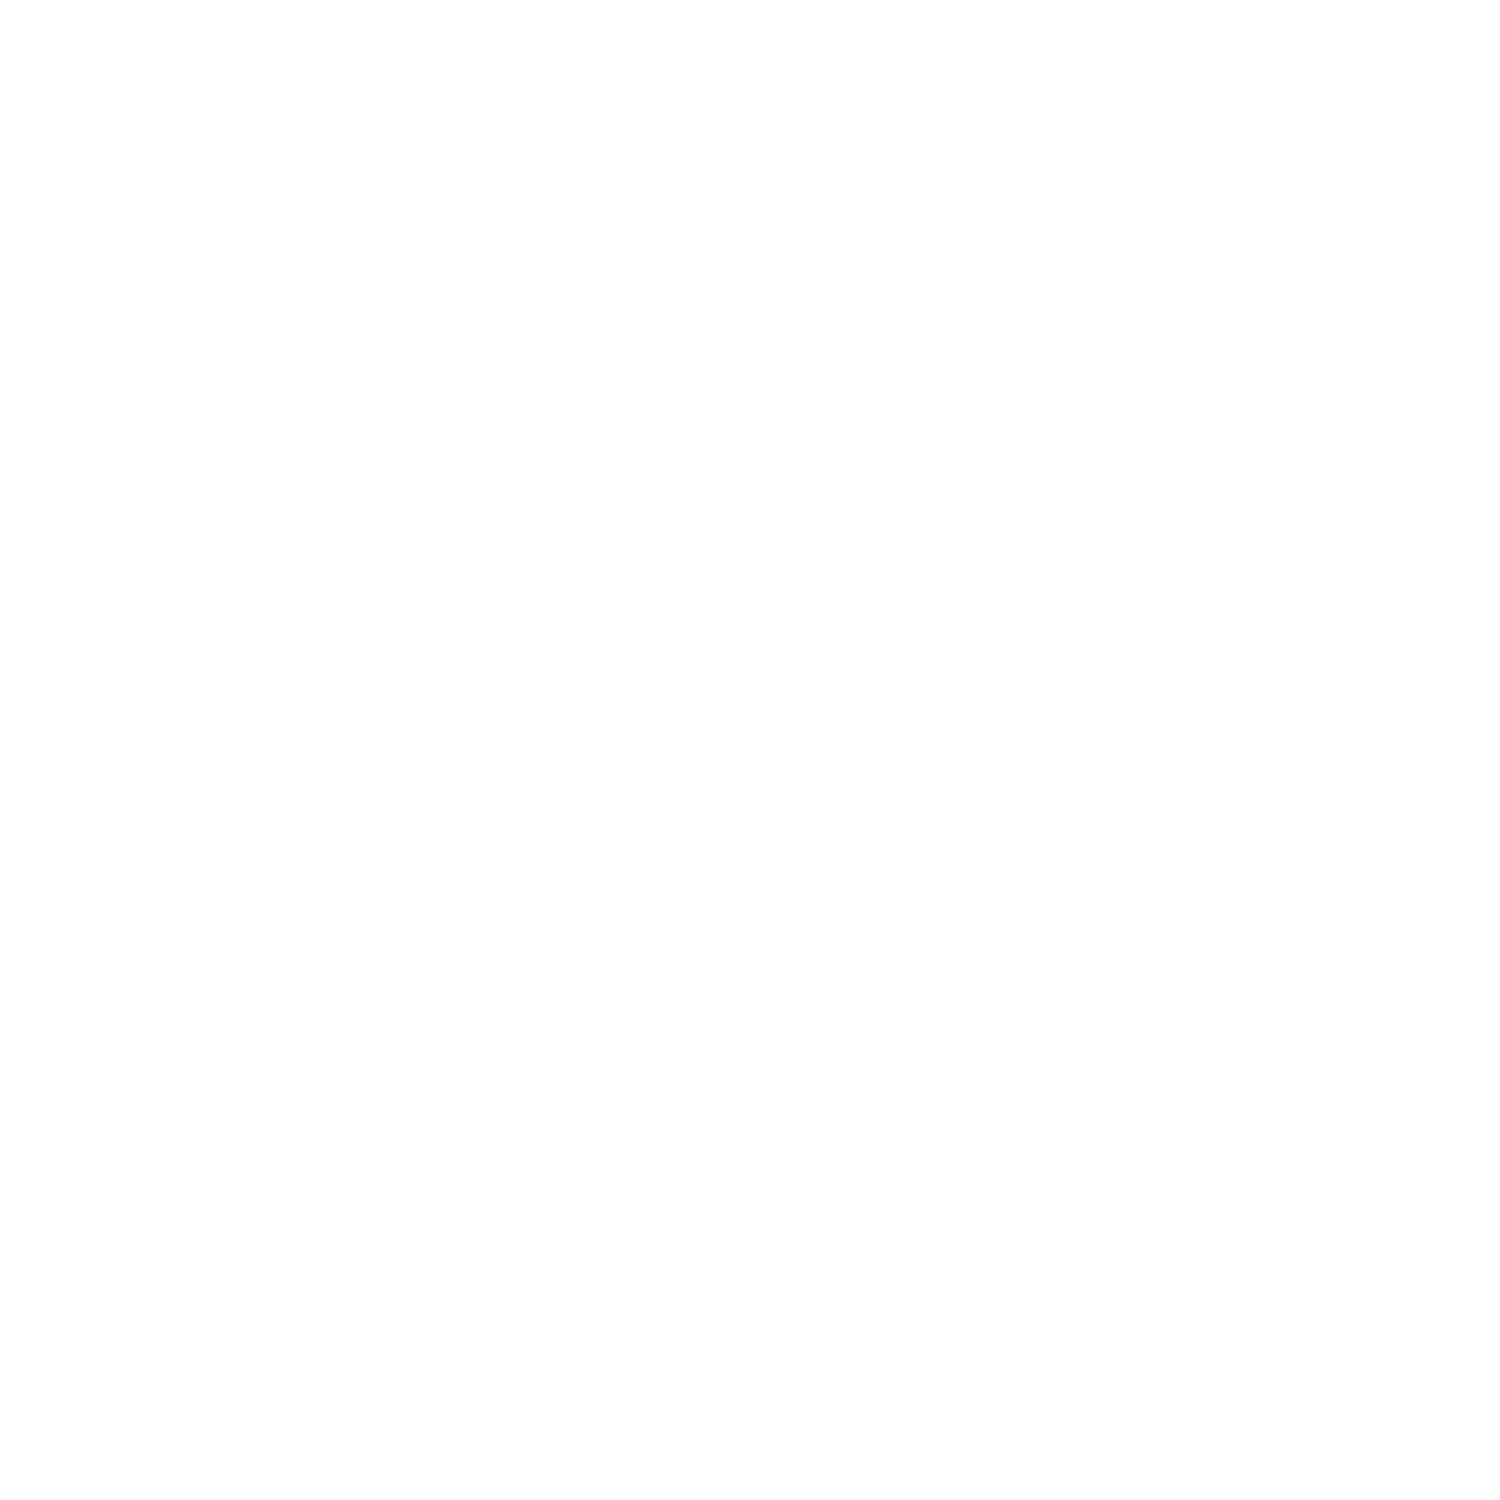 BusinessOutside